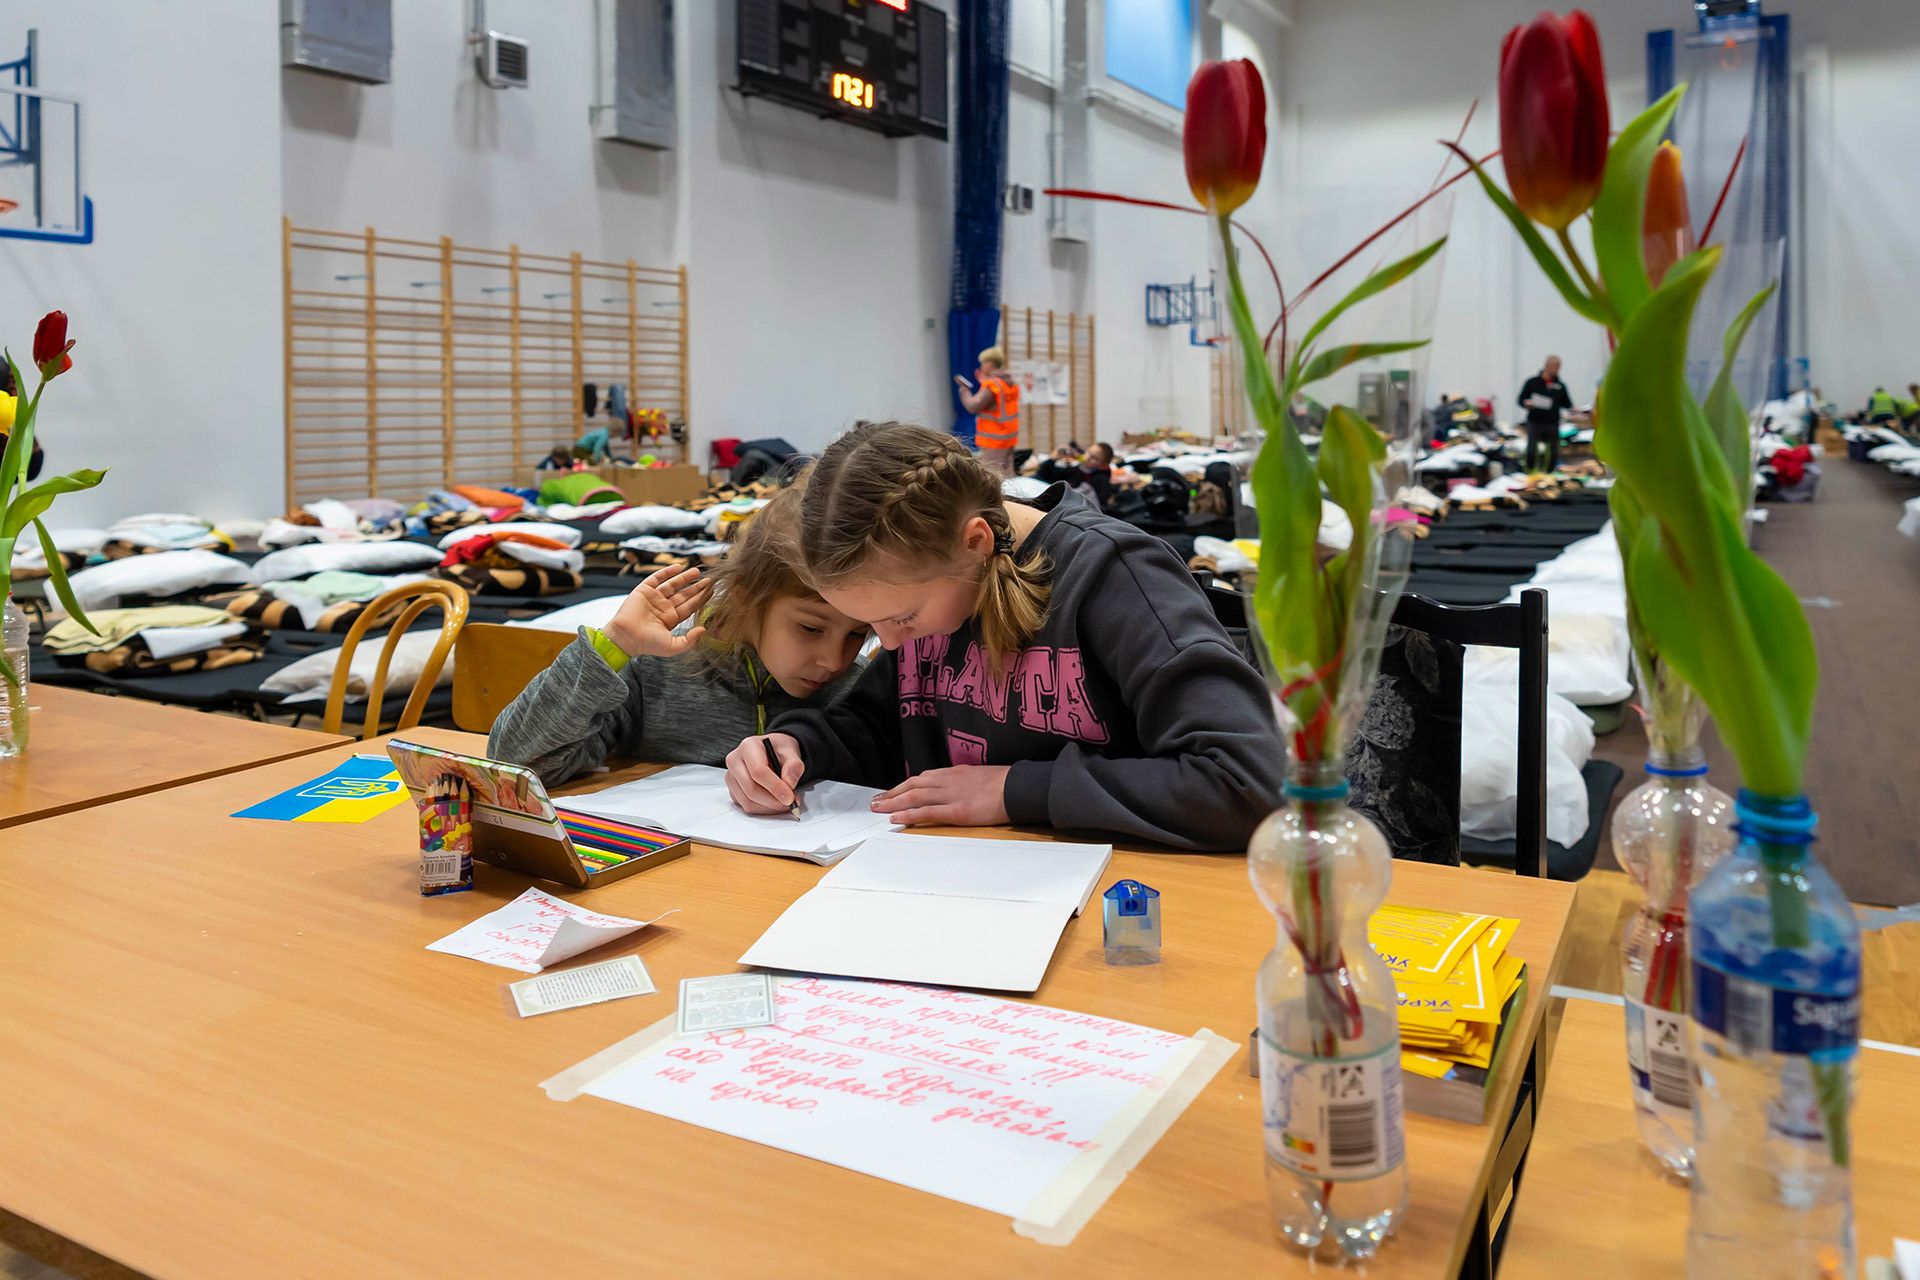 Le gymnase de Przemysl en Pologne a été transformé en centre d’accueil d’urgence pour les réfugiés ukrainiens au printemps 2022. Les bénévoles de notre partenaire PKPS organisent l’accueil et s’assurent de la dignité des lieux.